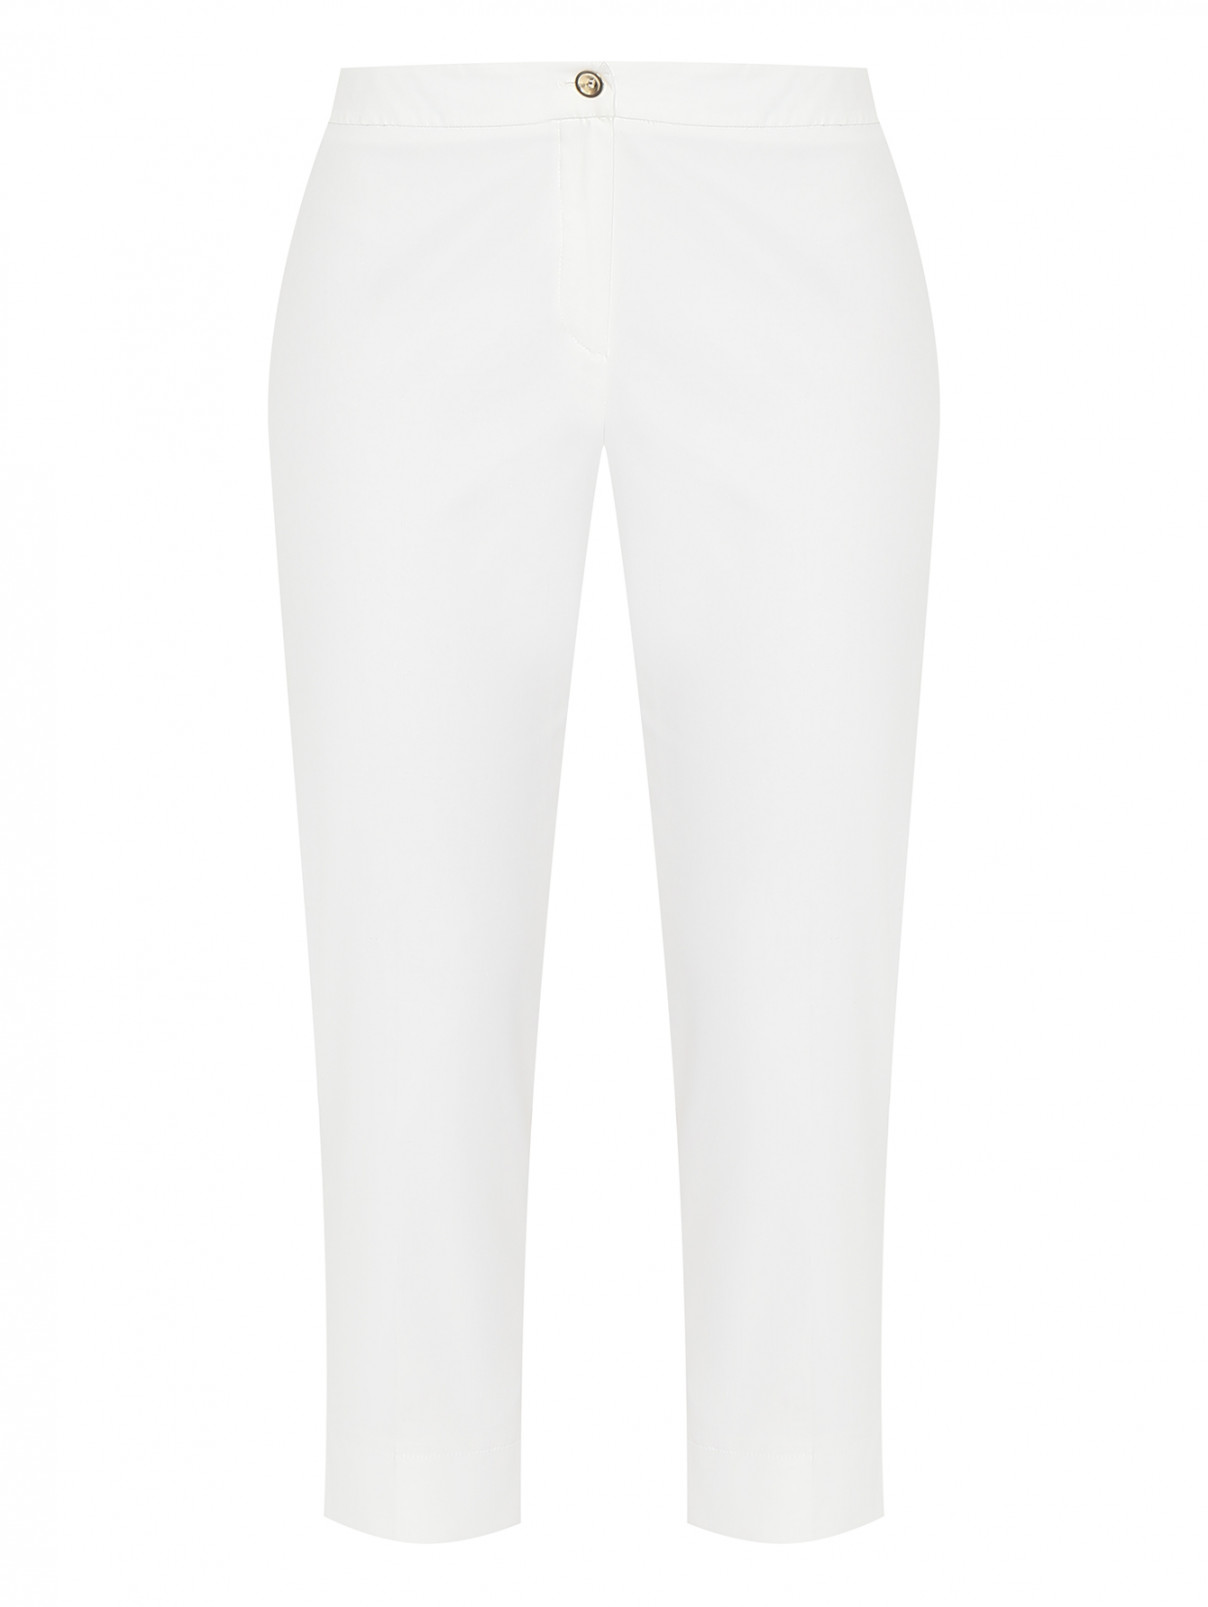 Укороченные брюки из хлопка Persona by Marina Rinaldi  –  Общий вид  – Цвет:  Белый